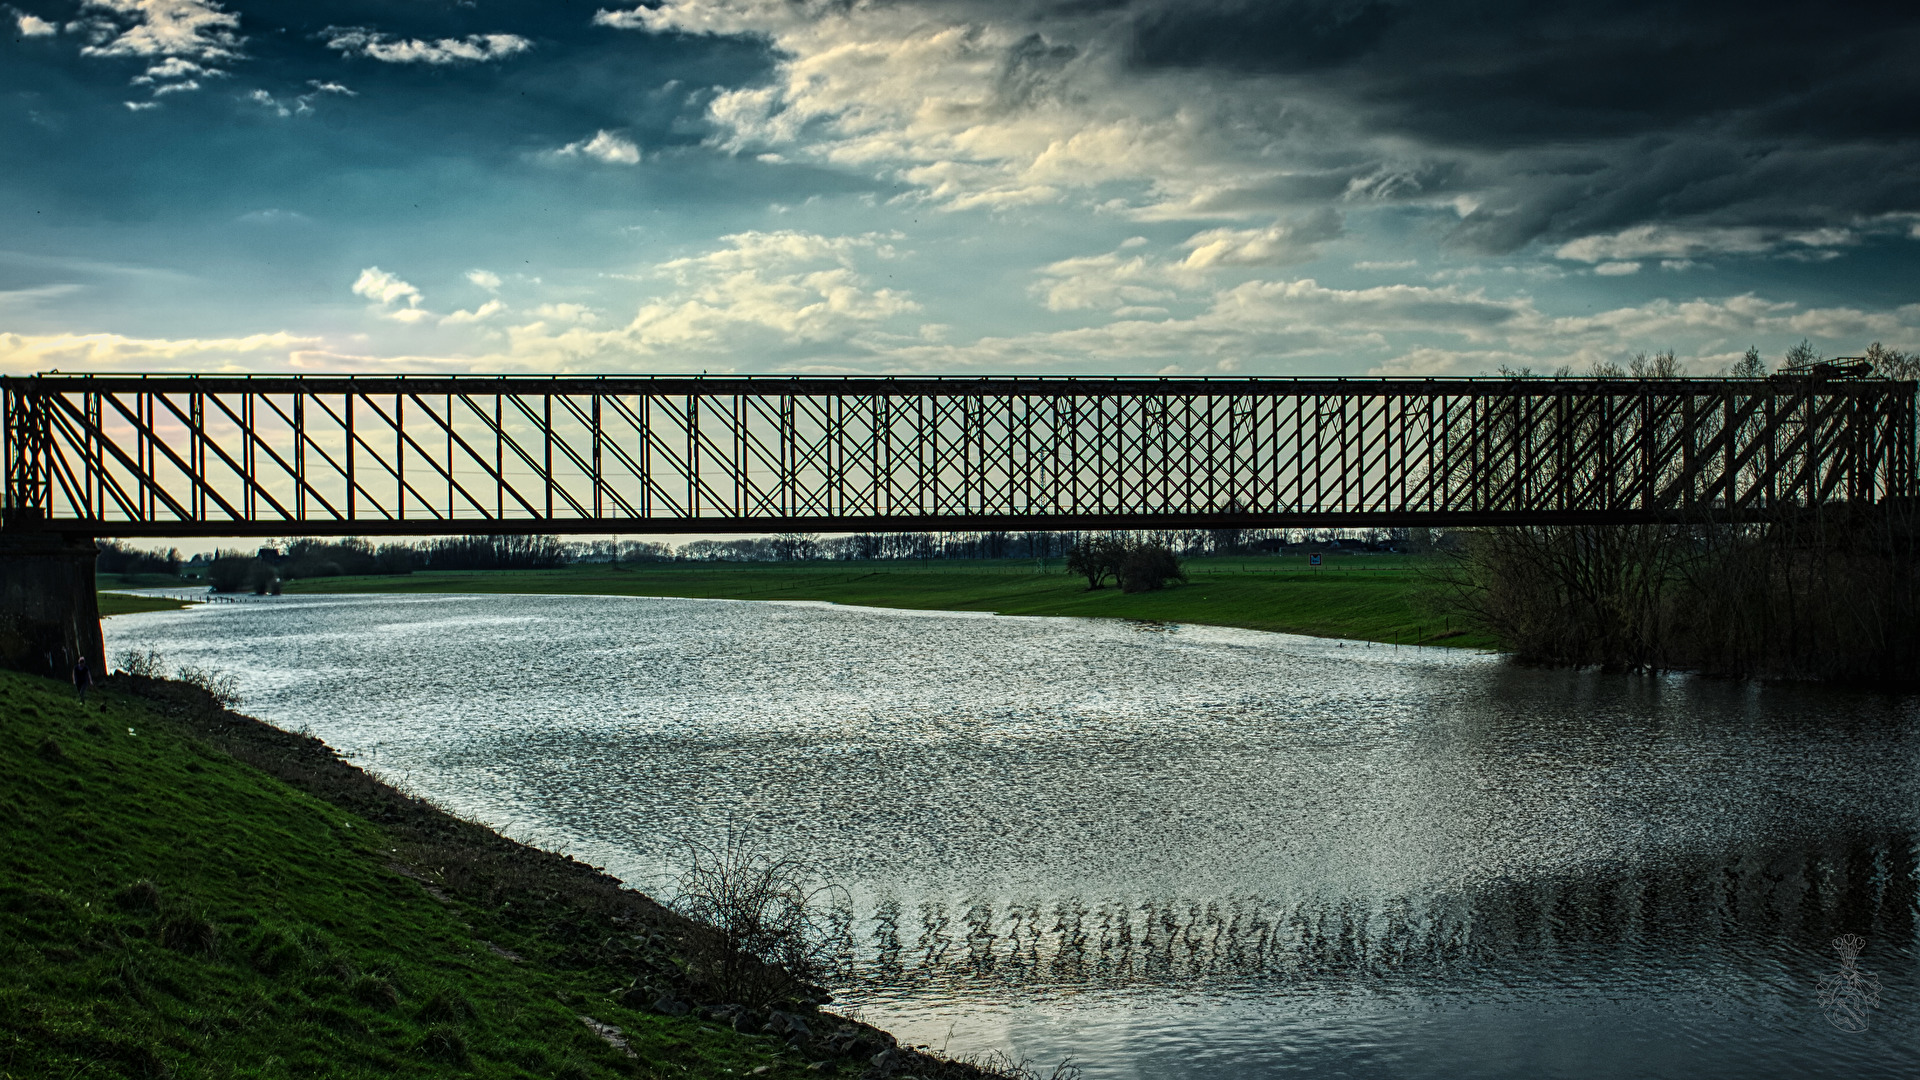 Iron bridge over muddy water